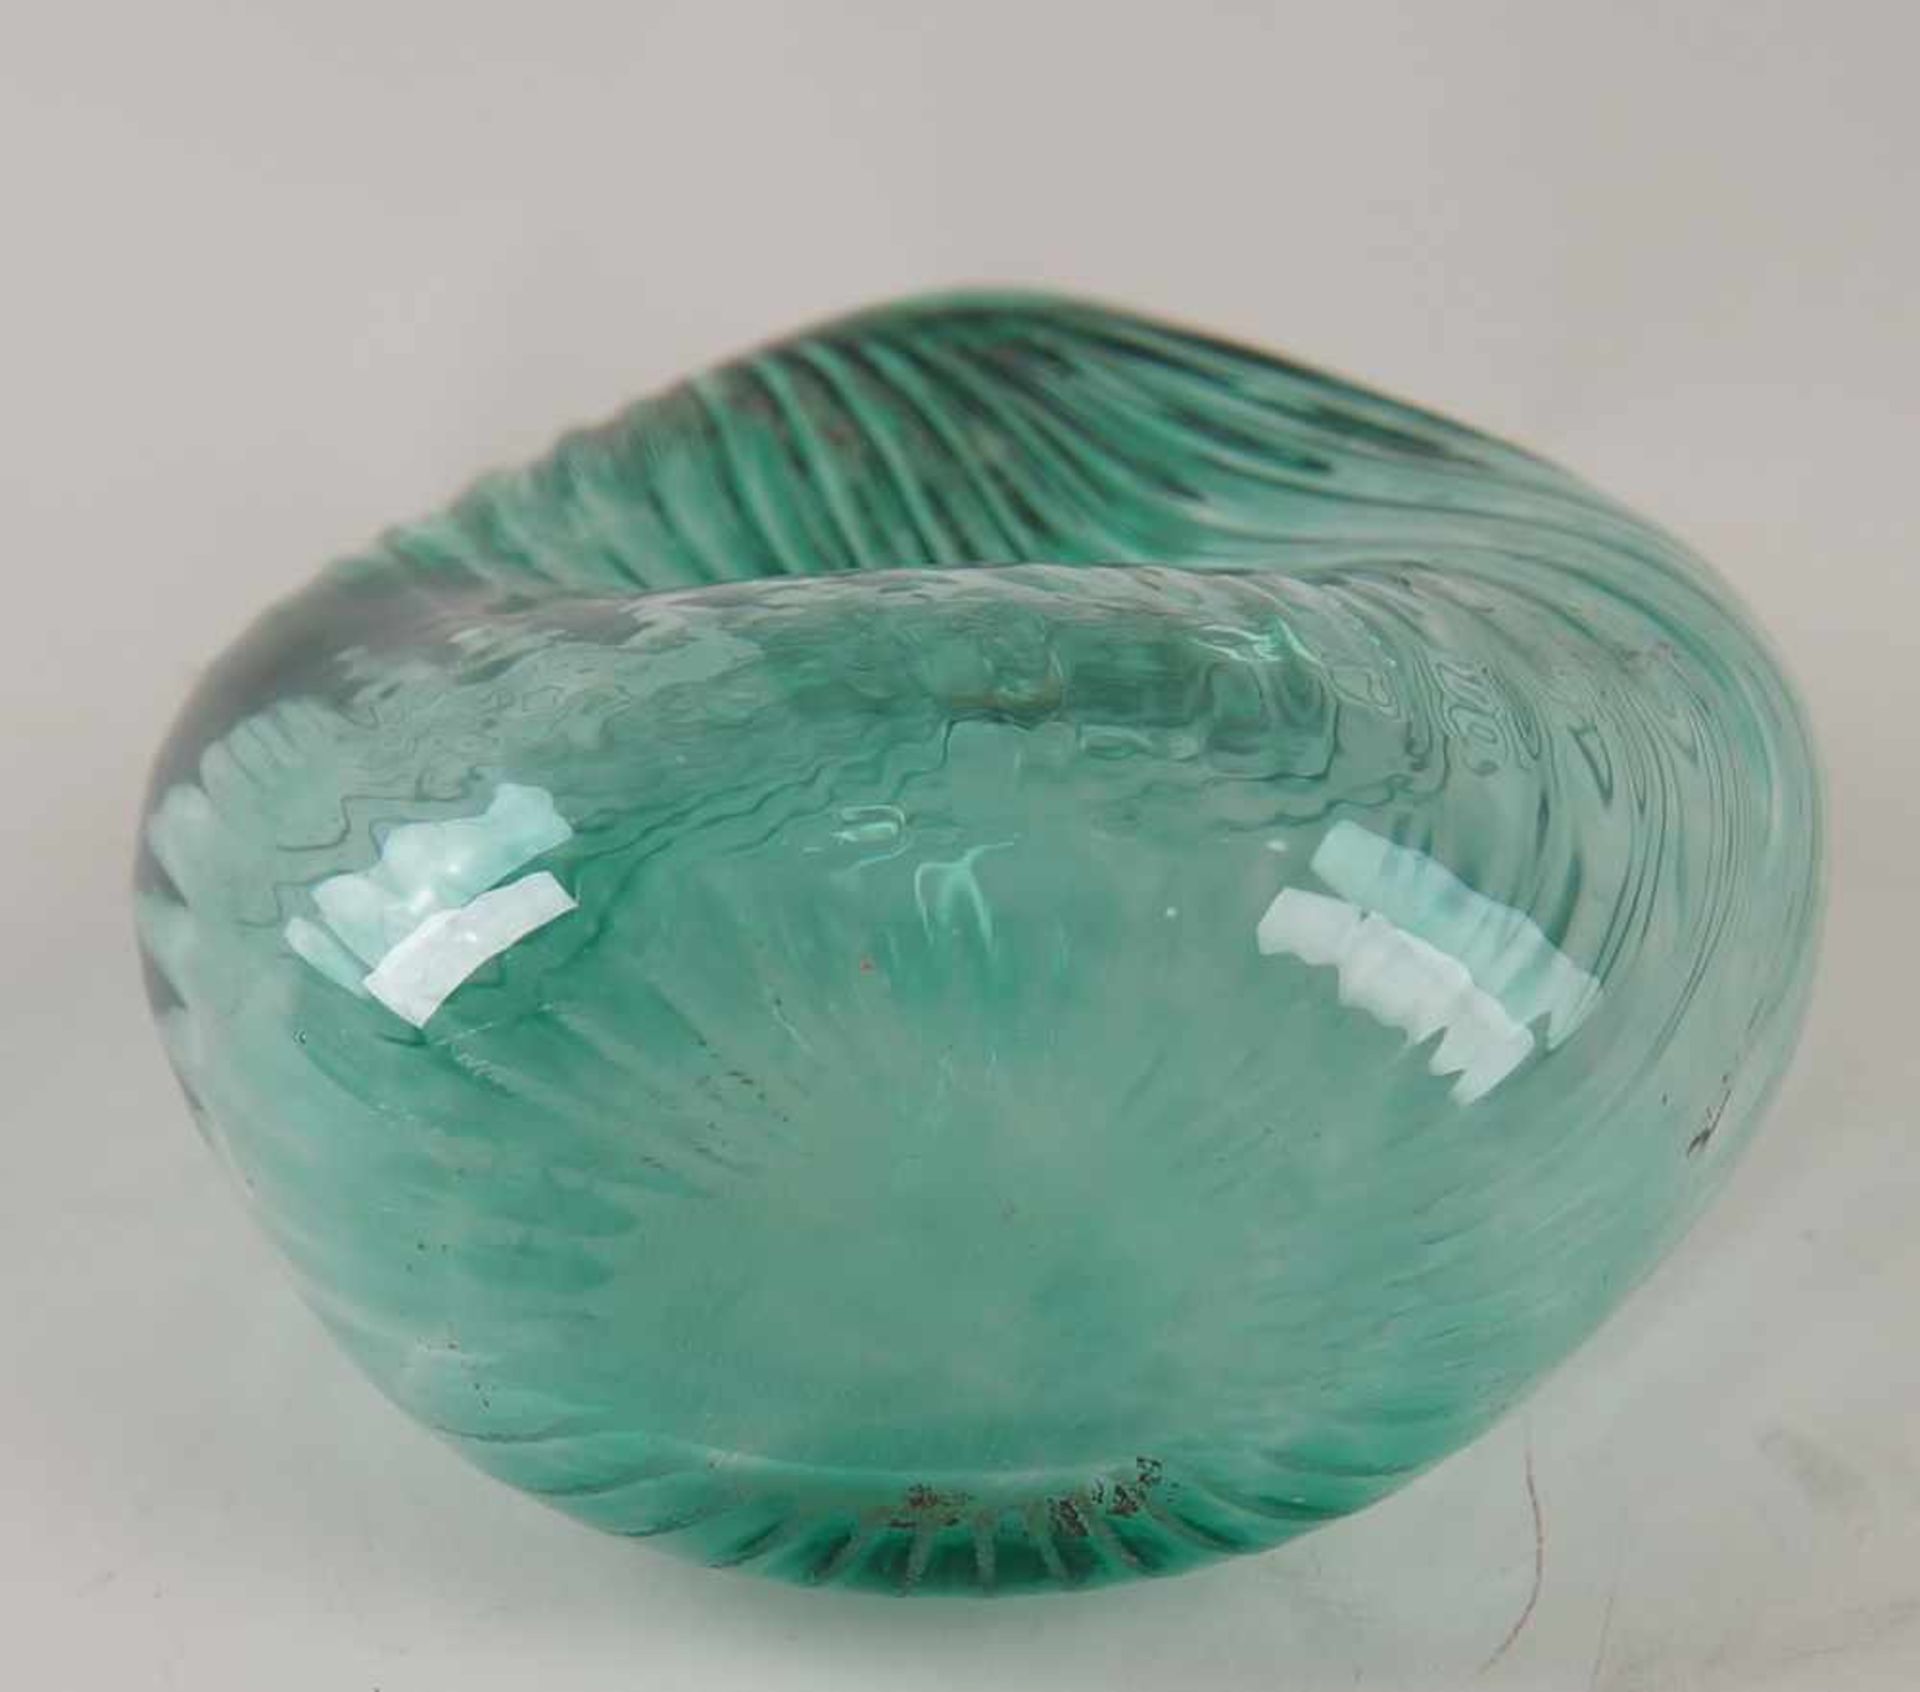 Gramsacher Nabelflasche, Tirol, ~ 1900, hellgrünes Glas, H 23,5cm - Bild 6 aus 6